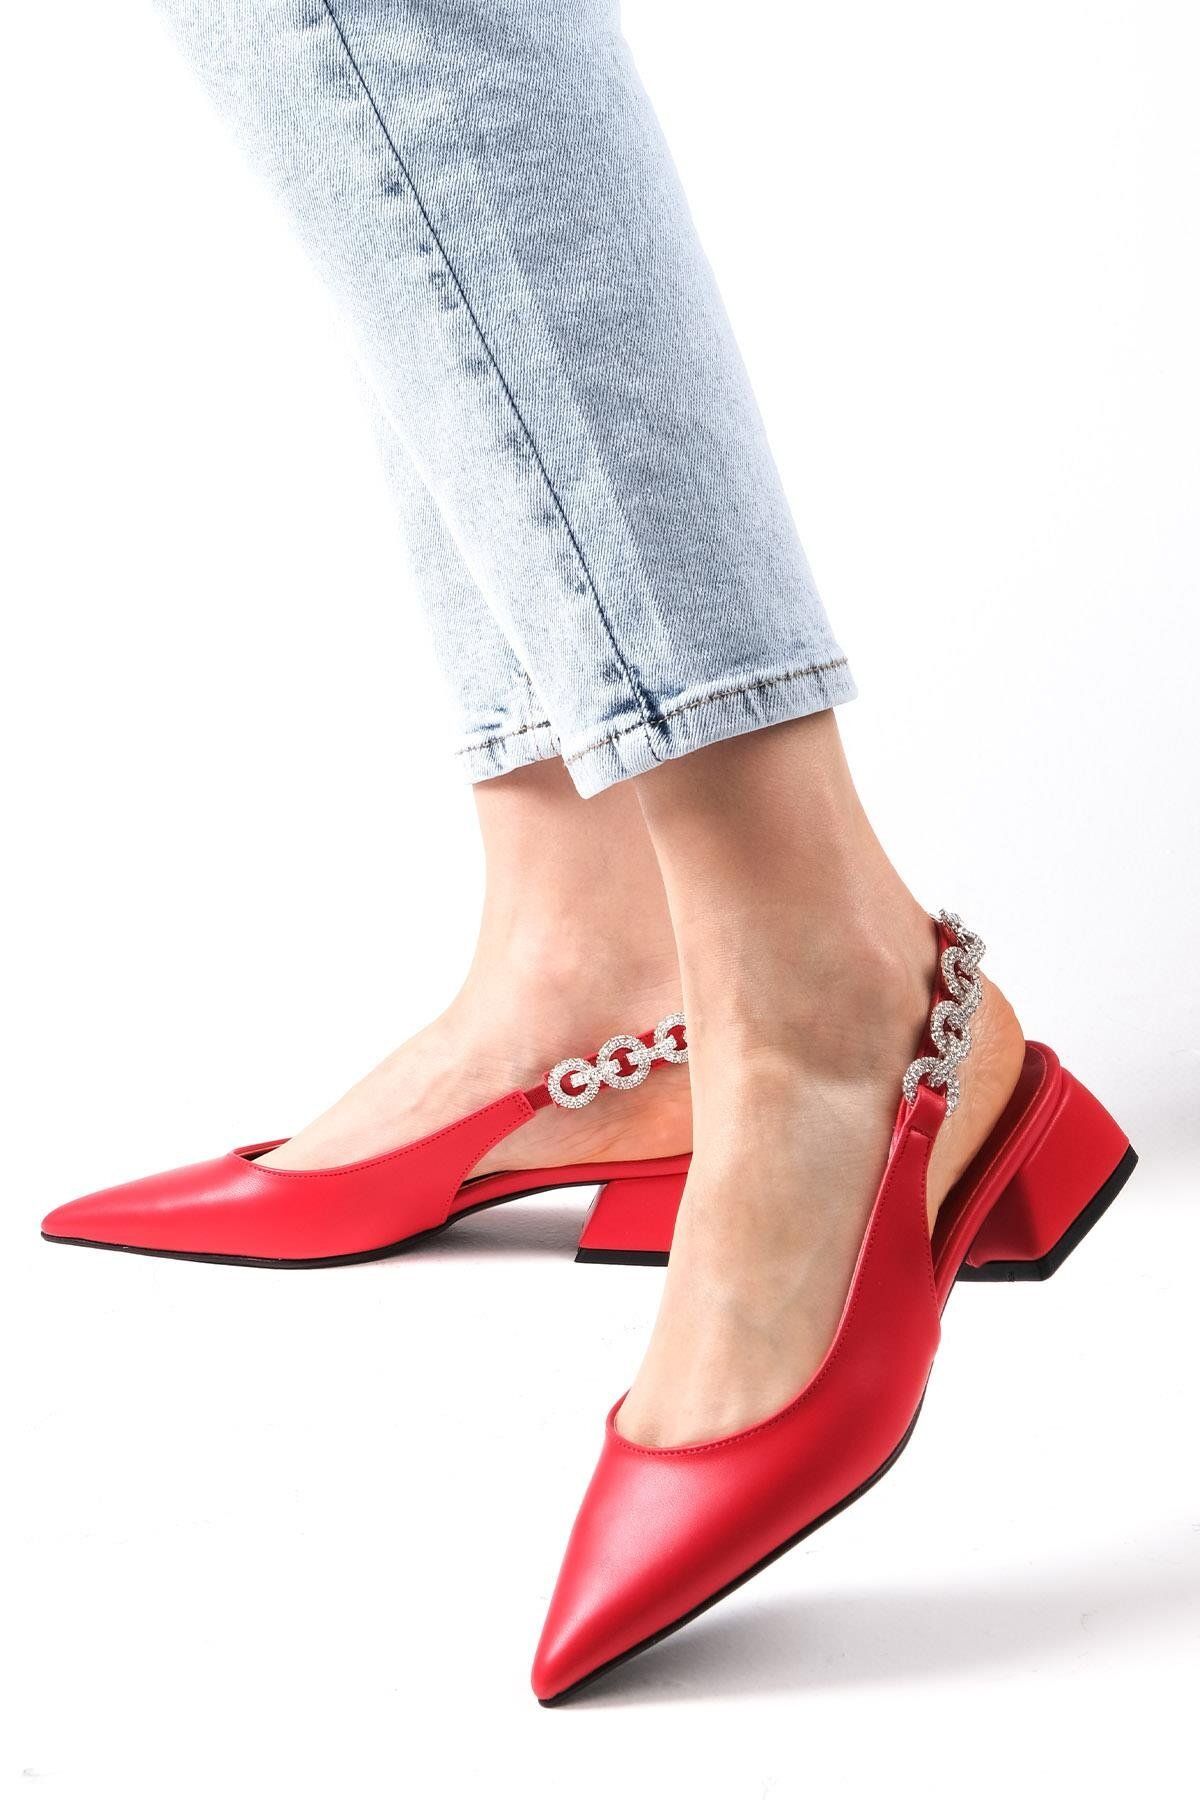 Mio Gusto Sophie Kırmızı Renk Arkası Açık Taş Bantlı Kadın Kısa Topuklu Ayakkabı